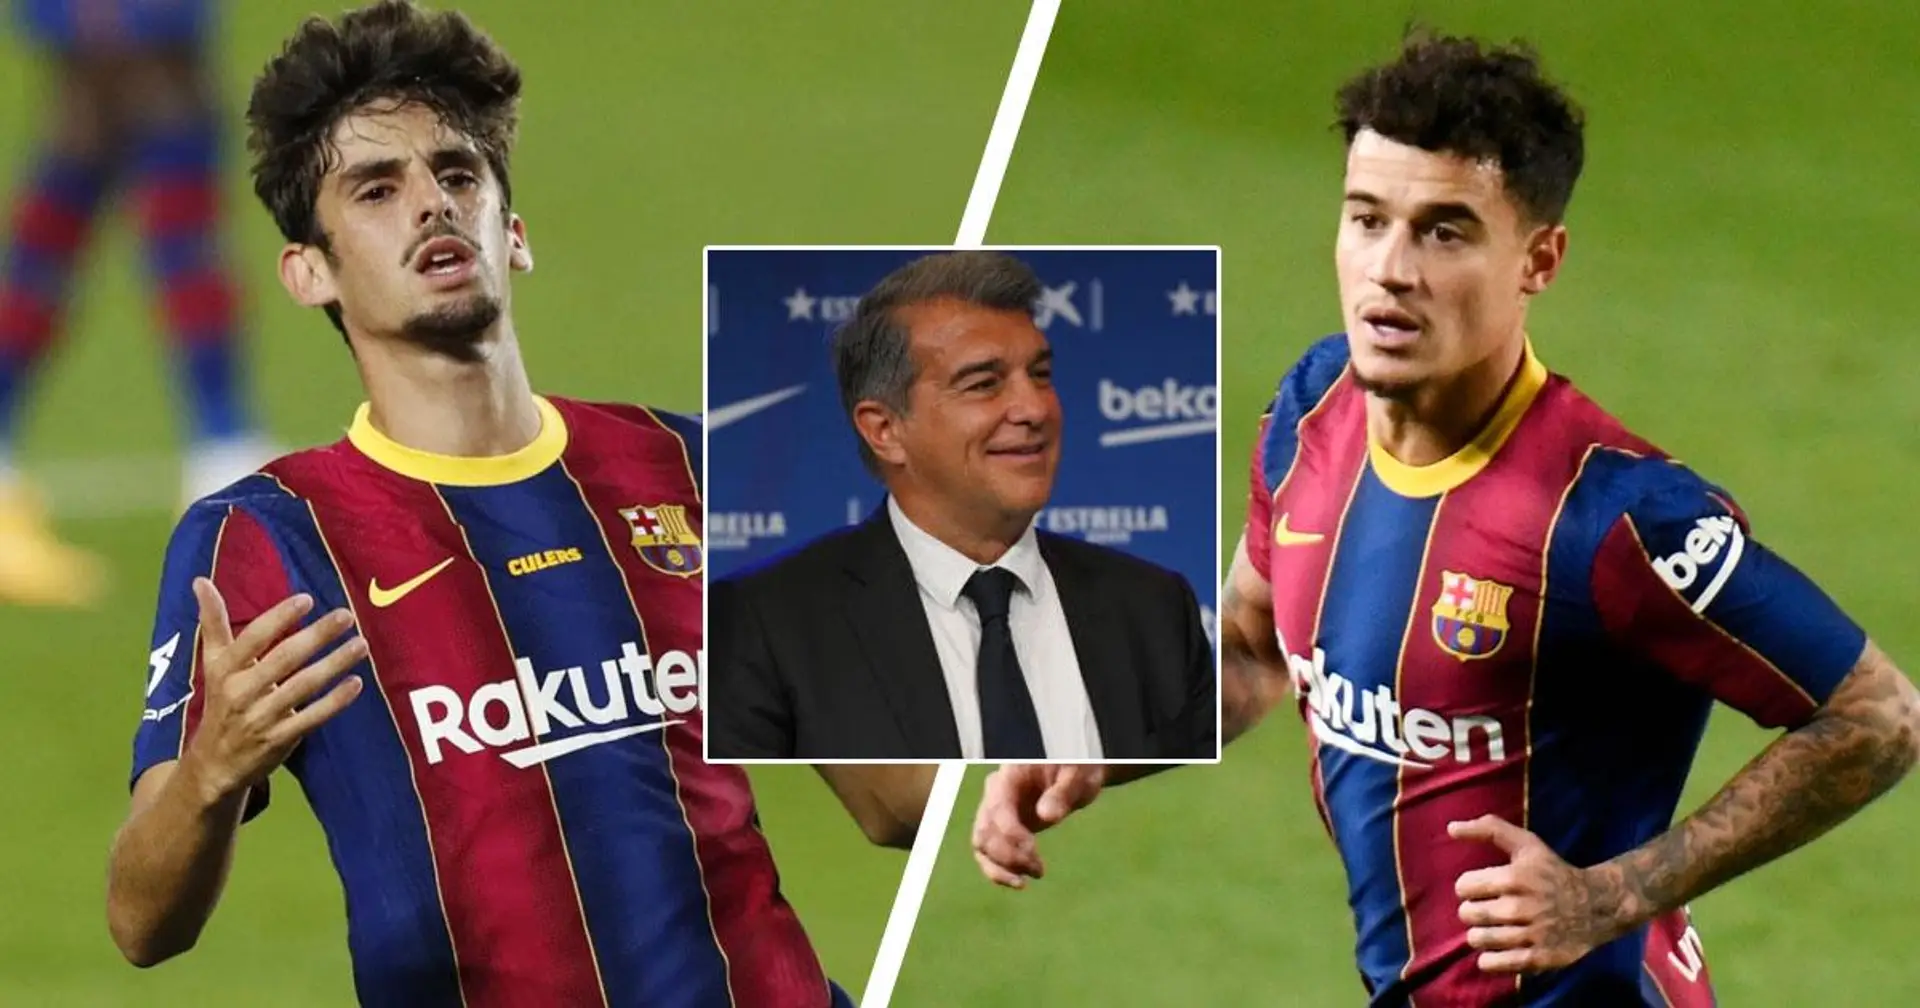 حدد برشلونة 11 لاعب لبيعهم من أجل توفير 200 مليون يورو في الأجور (الموثوقية: 4 نجوم)